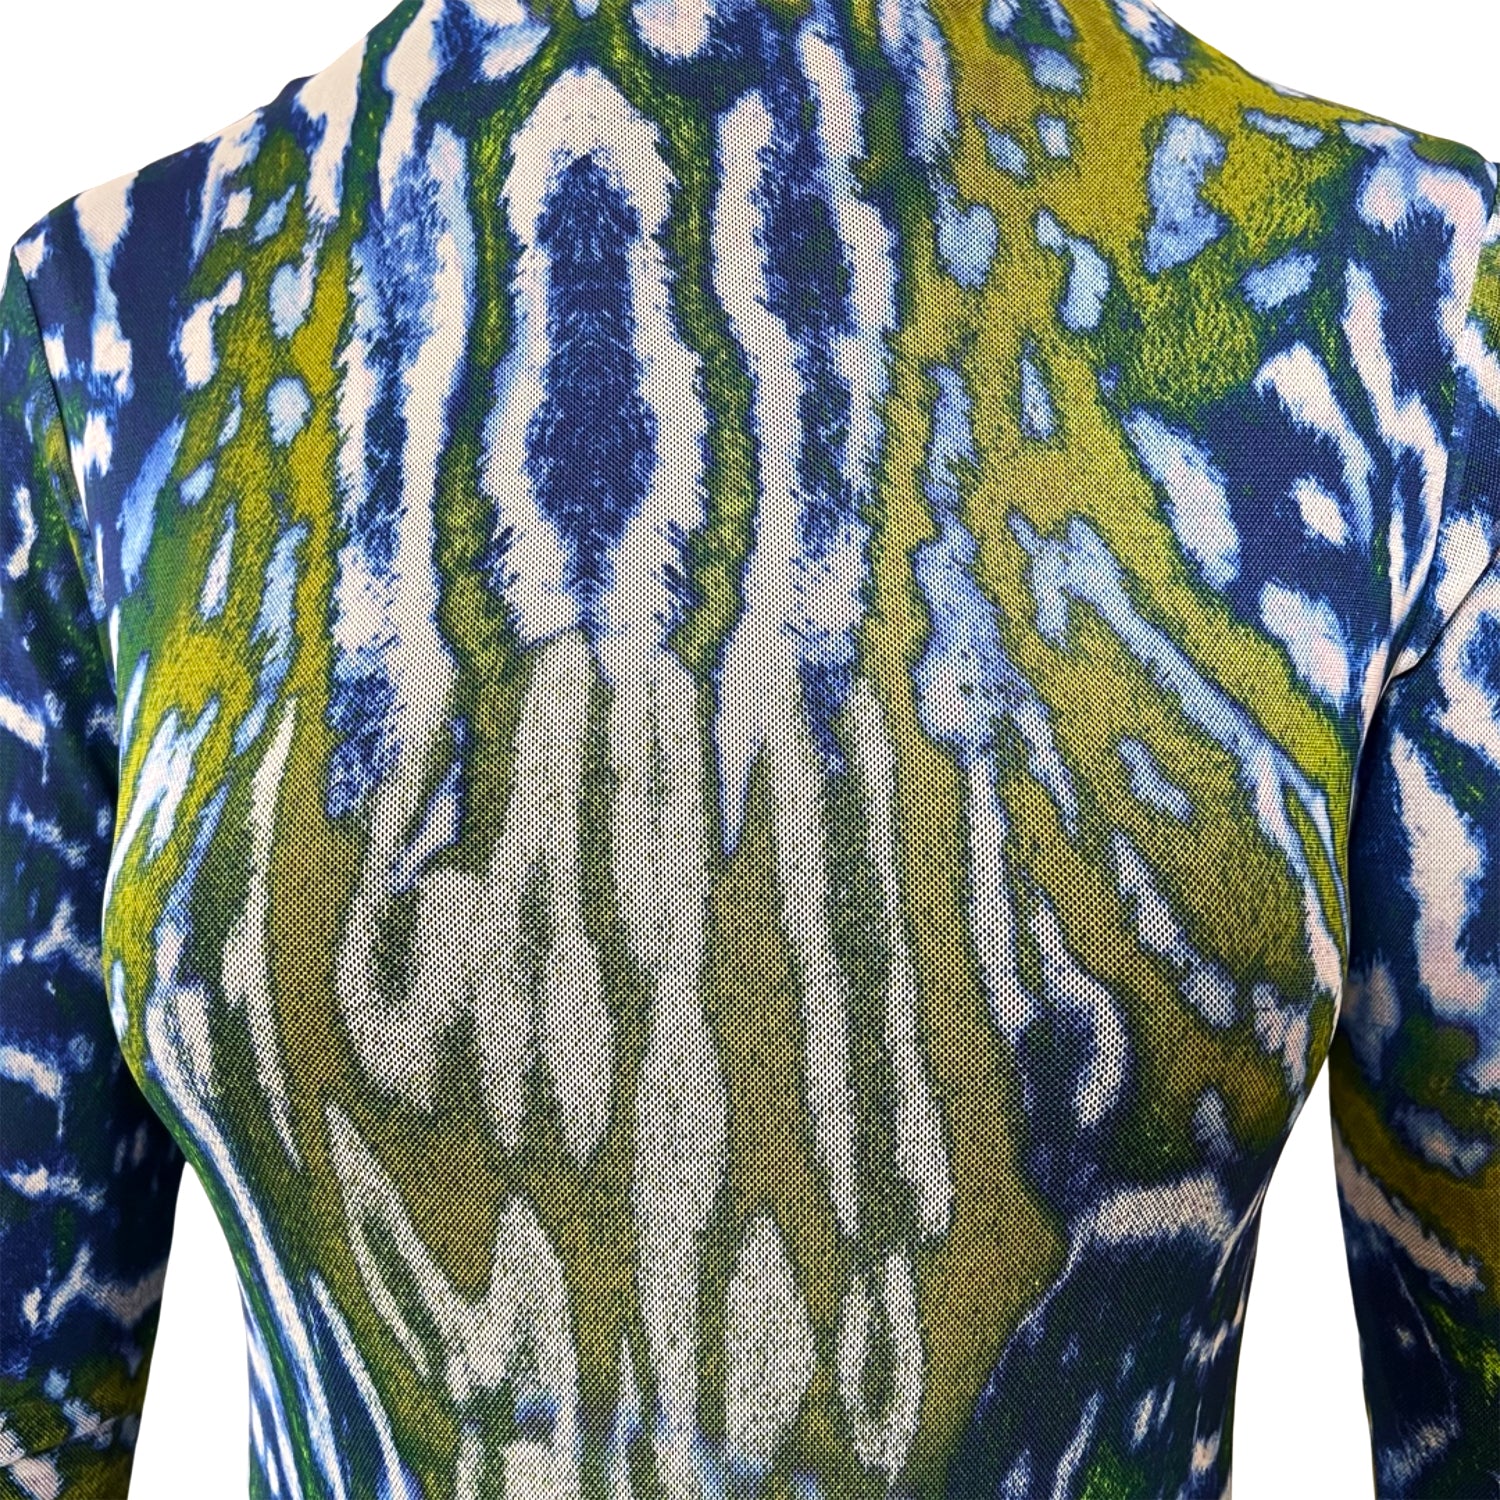 Printed Mesh Bodysuit in Blue & Green